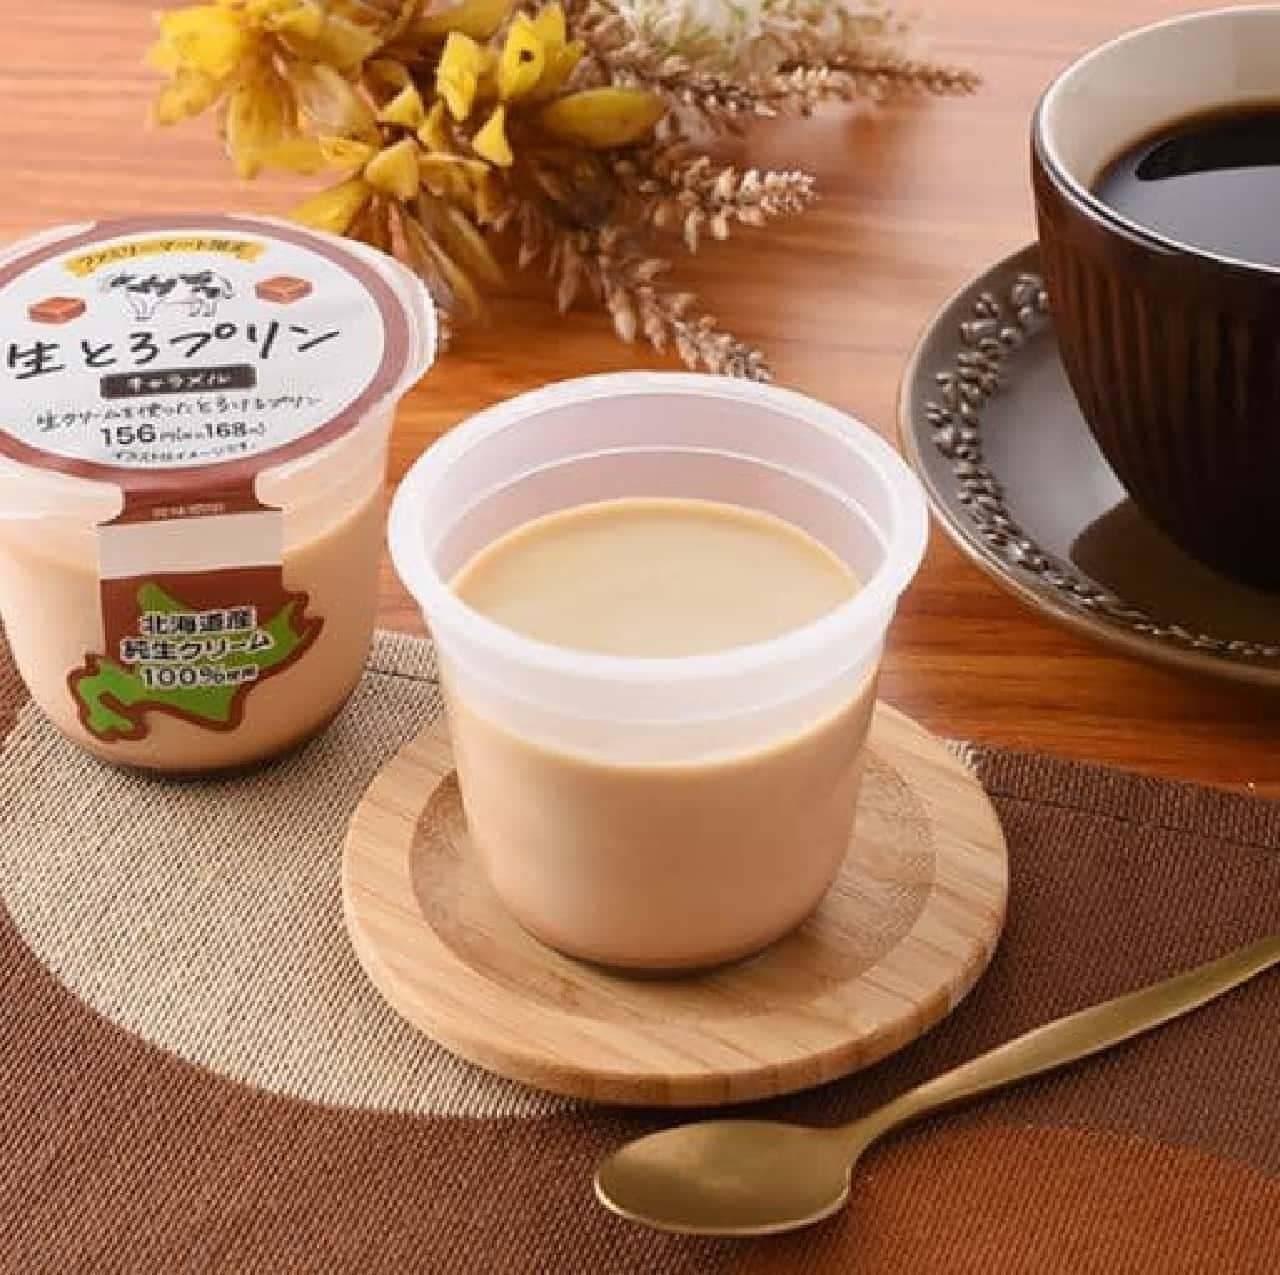 FamilyMart "Raw Toro Pudding Caramel"